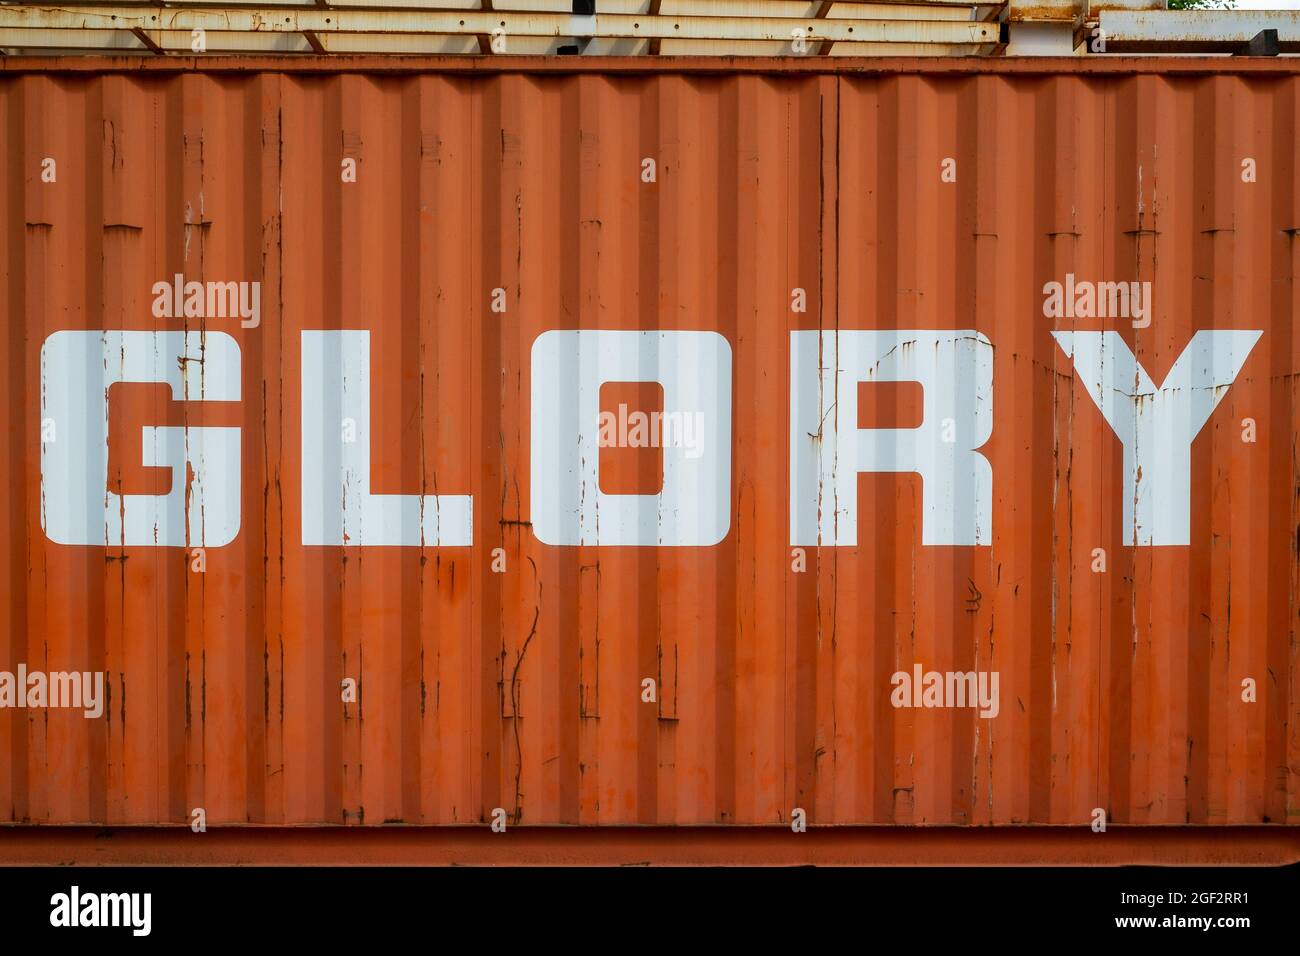 Le mot Glory écrit sur un conteneur industriel en émail blanc sur fond orange Banque D'Images